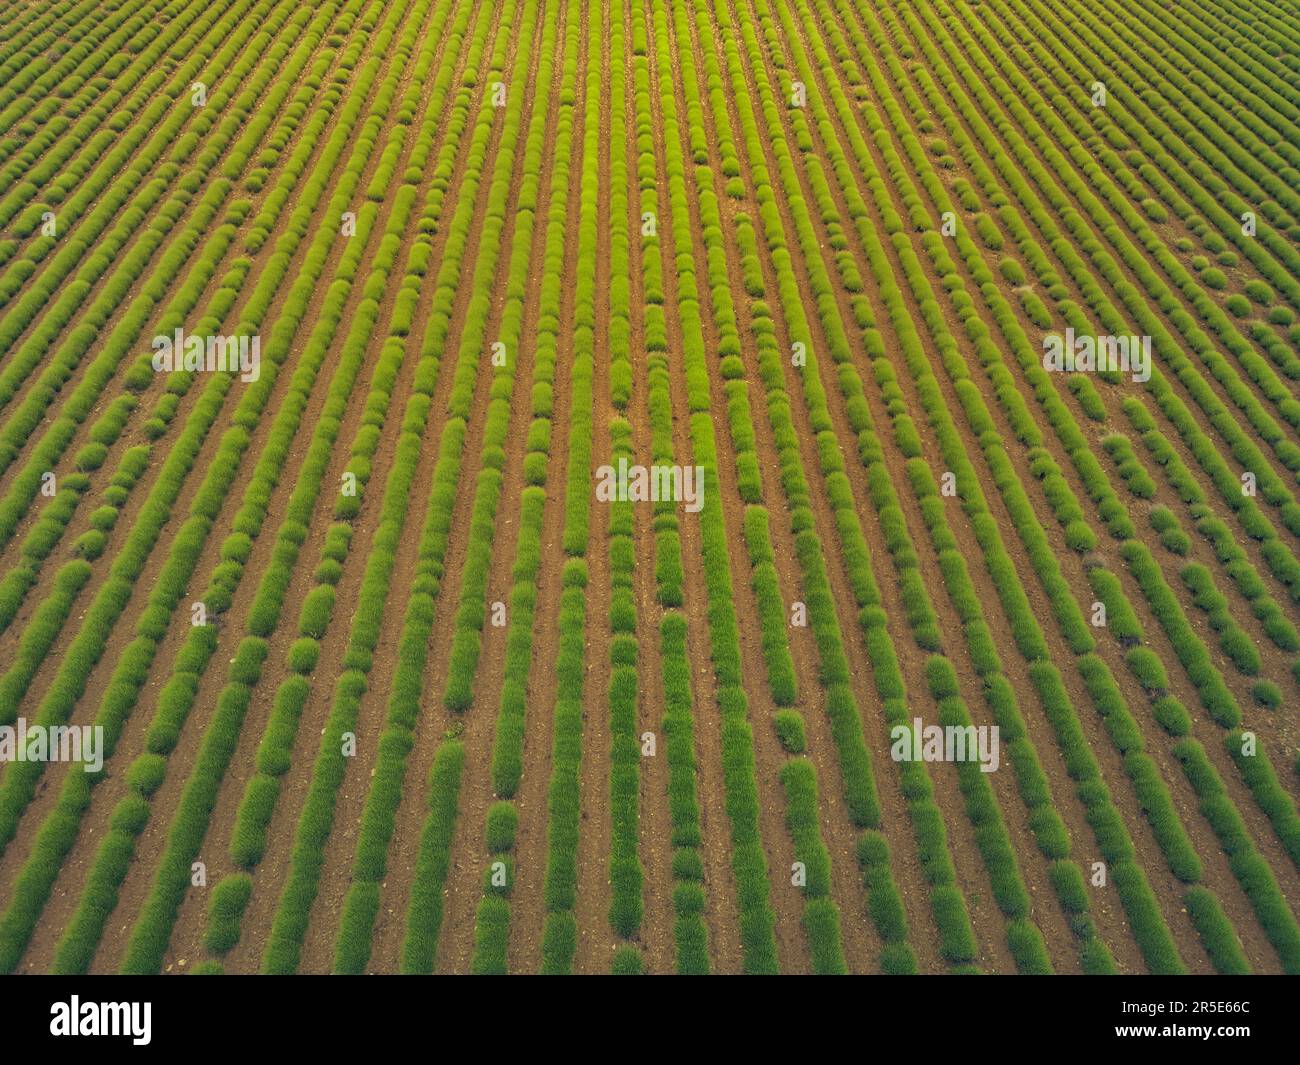 Ich kümmere mich um das Erntegut. Luftaufnahme eines riesigen Ackerlands. Grüne Weizenfelder aus der Vogelperspektive, sogar Straßenspuren, die für einen Traktor vorgesehen sind. Abstrac Stockfoto